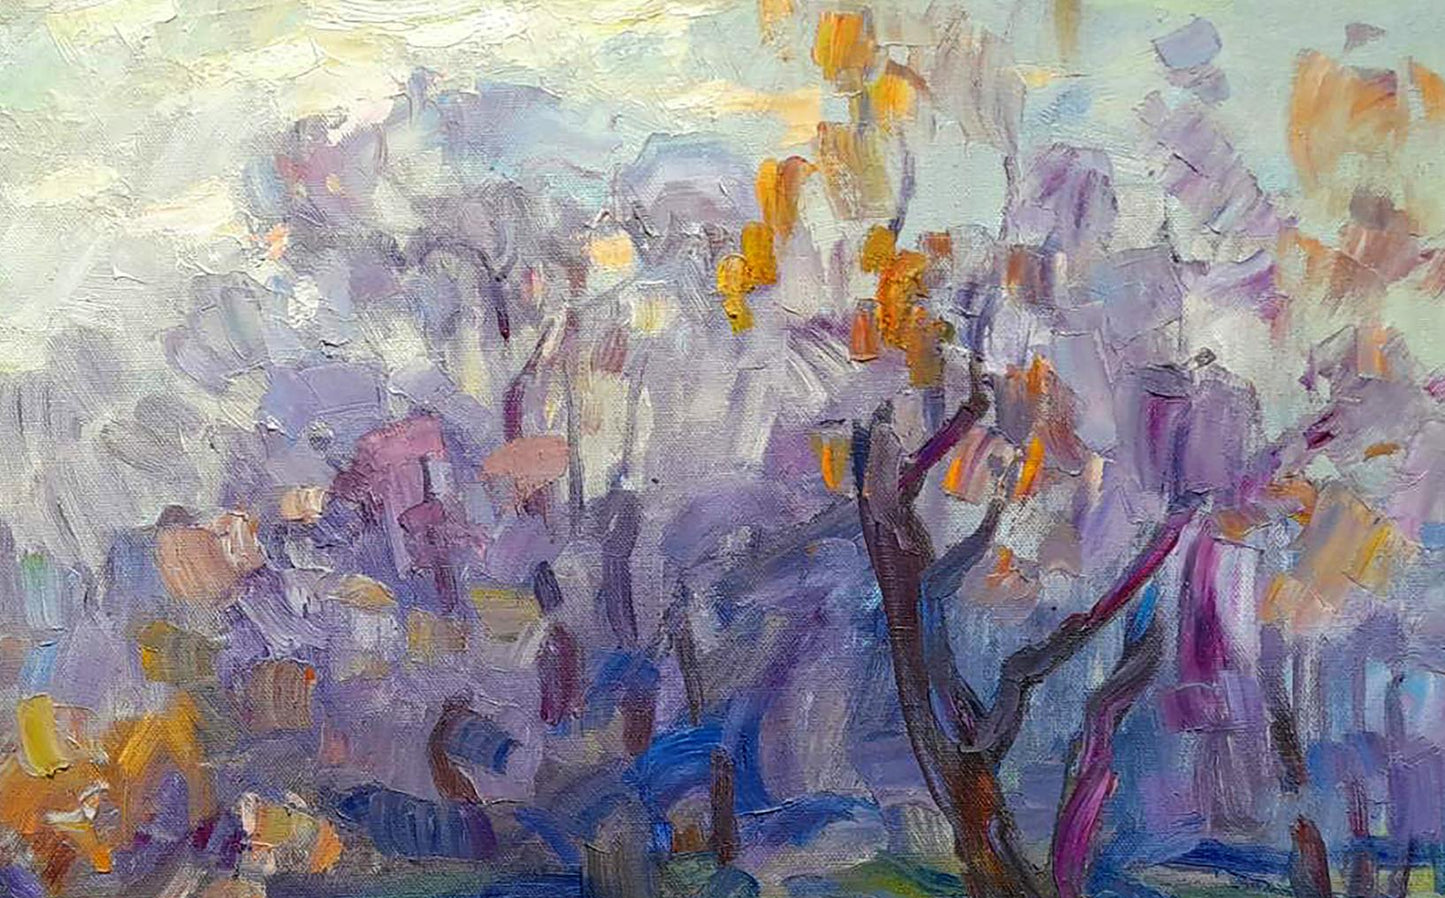 Oi painting Autumn forest Ivan Kovalenko